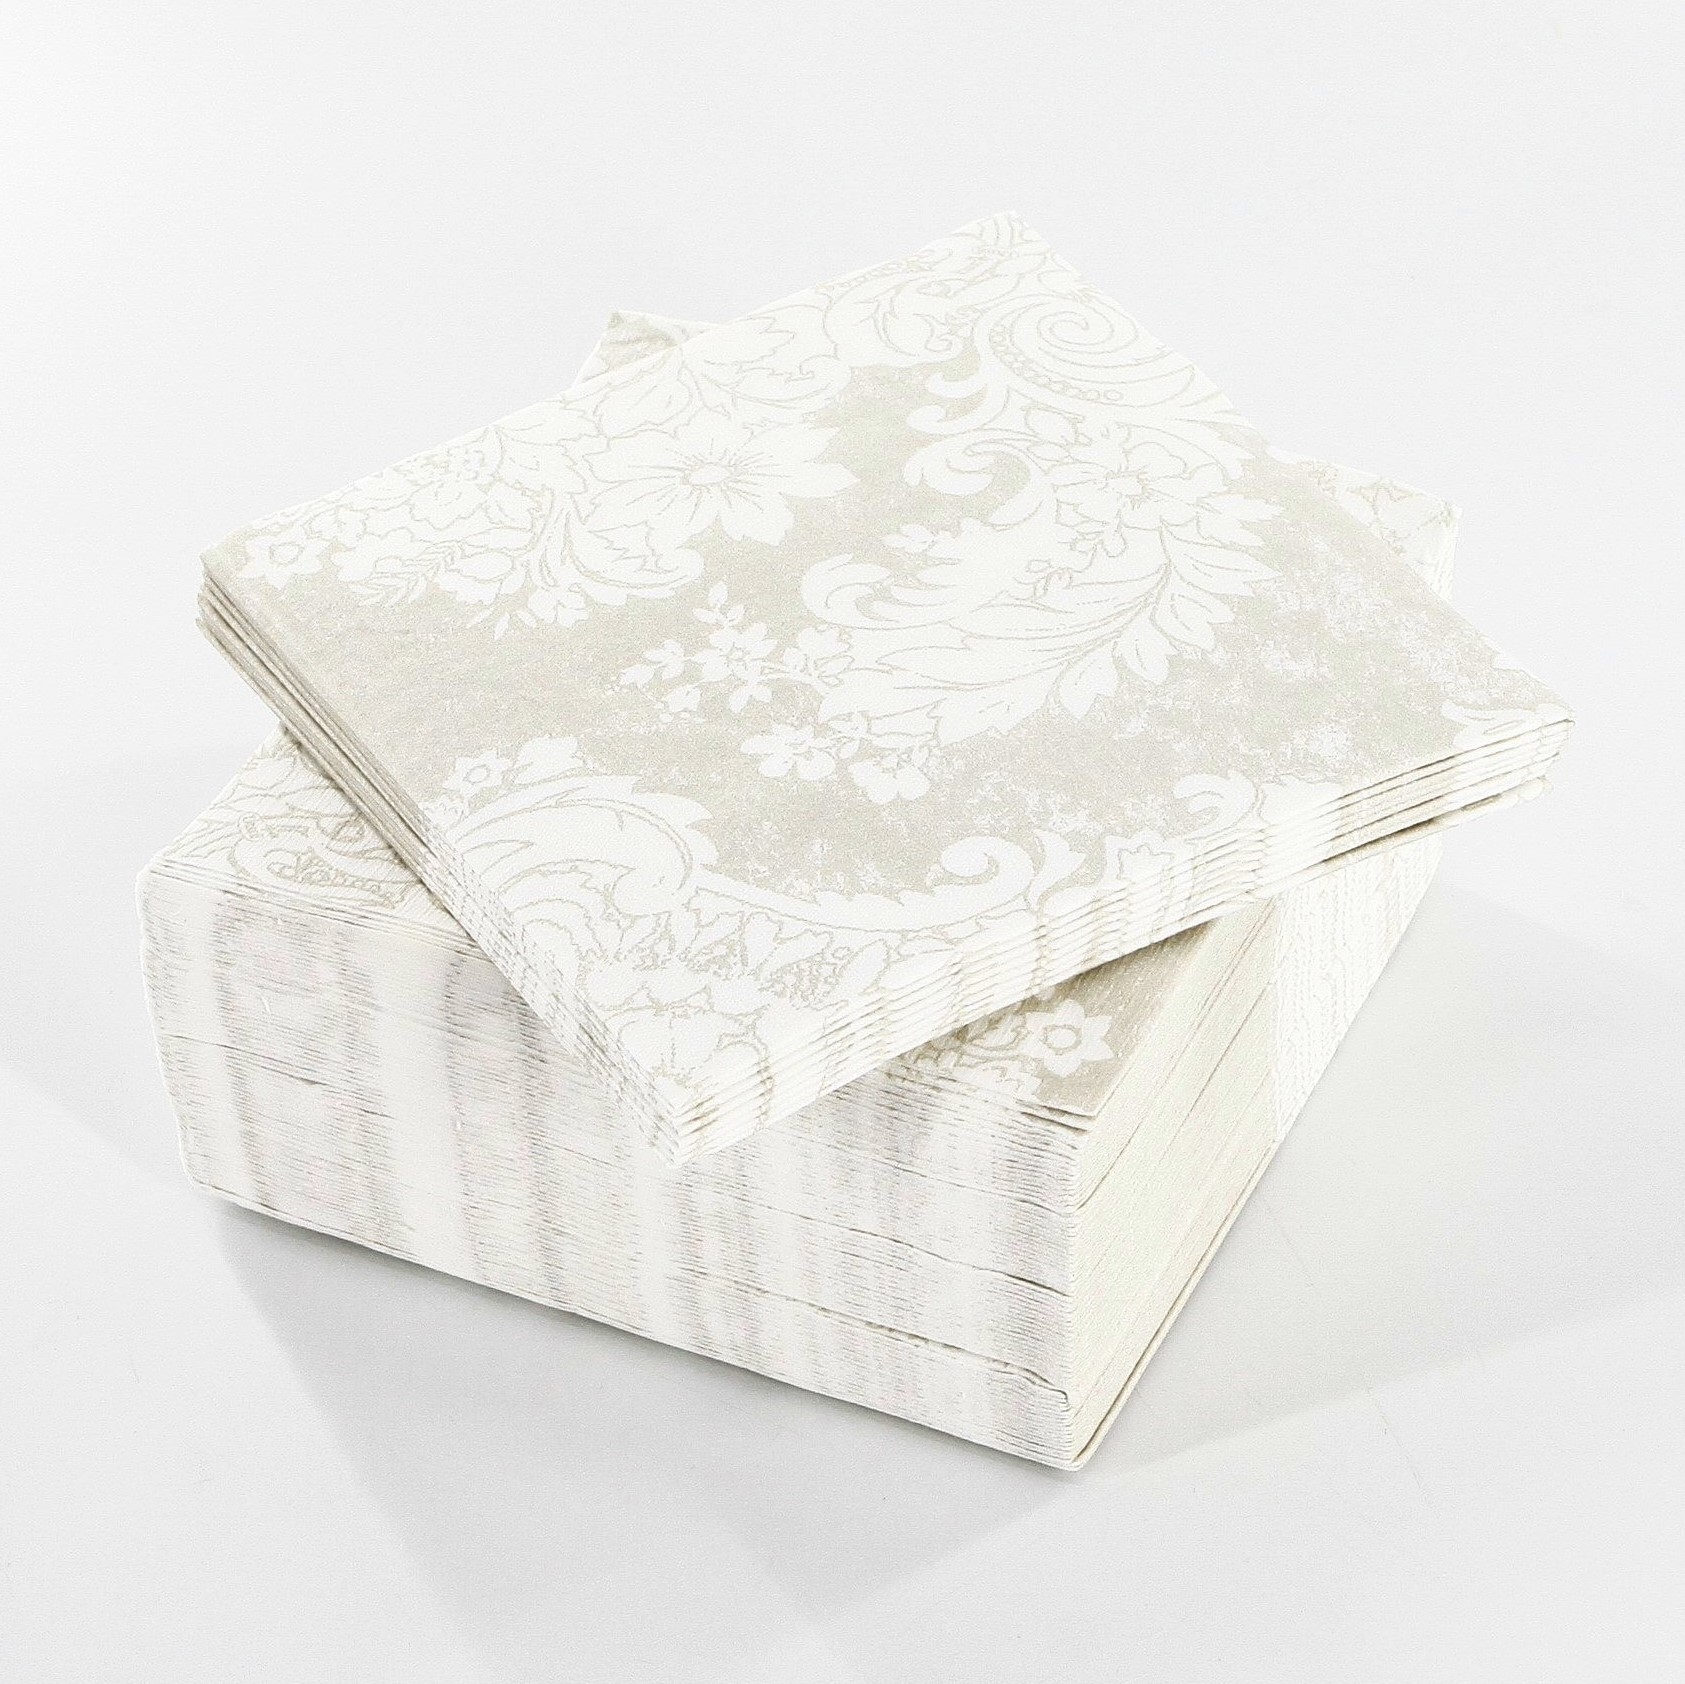 Papír ubrousek Napkins D-Lin 40cm royal white 45ks